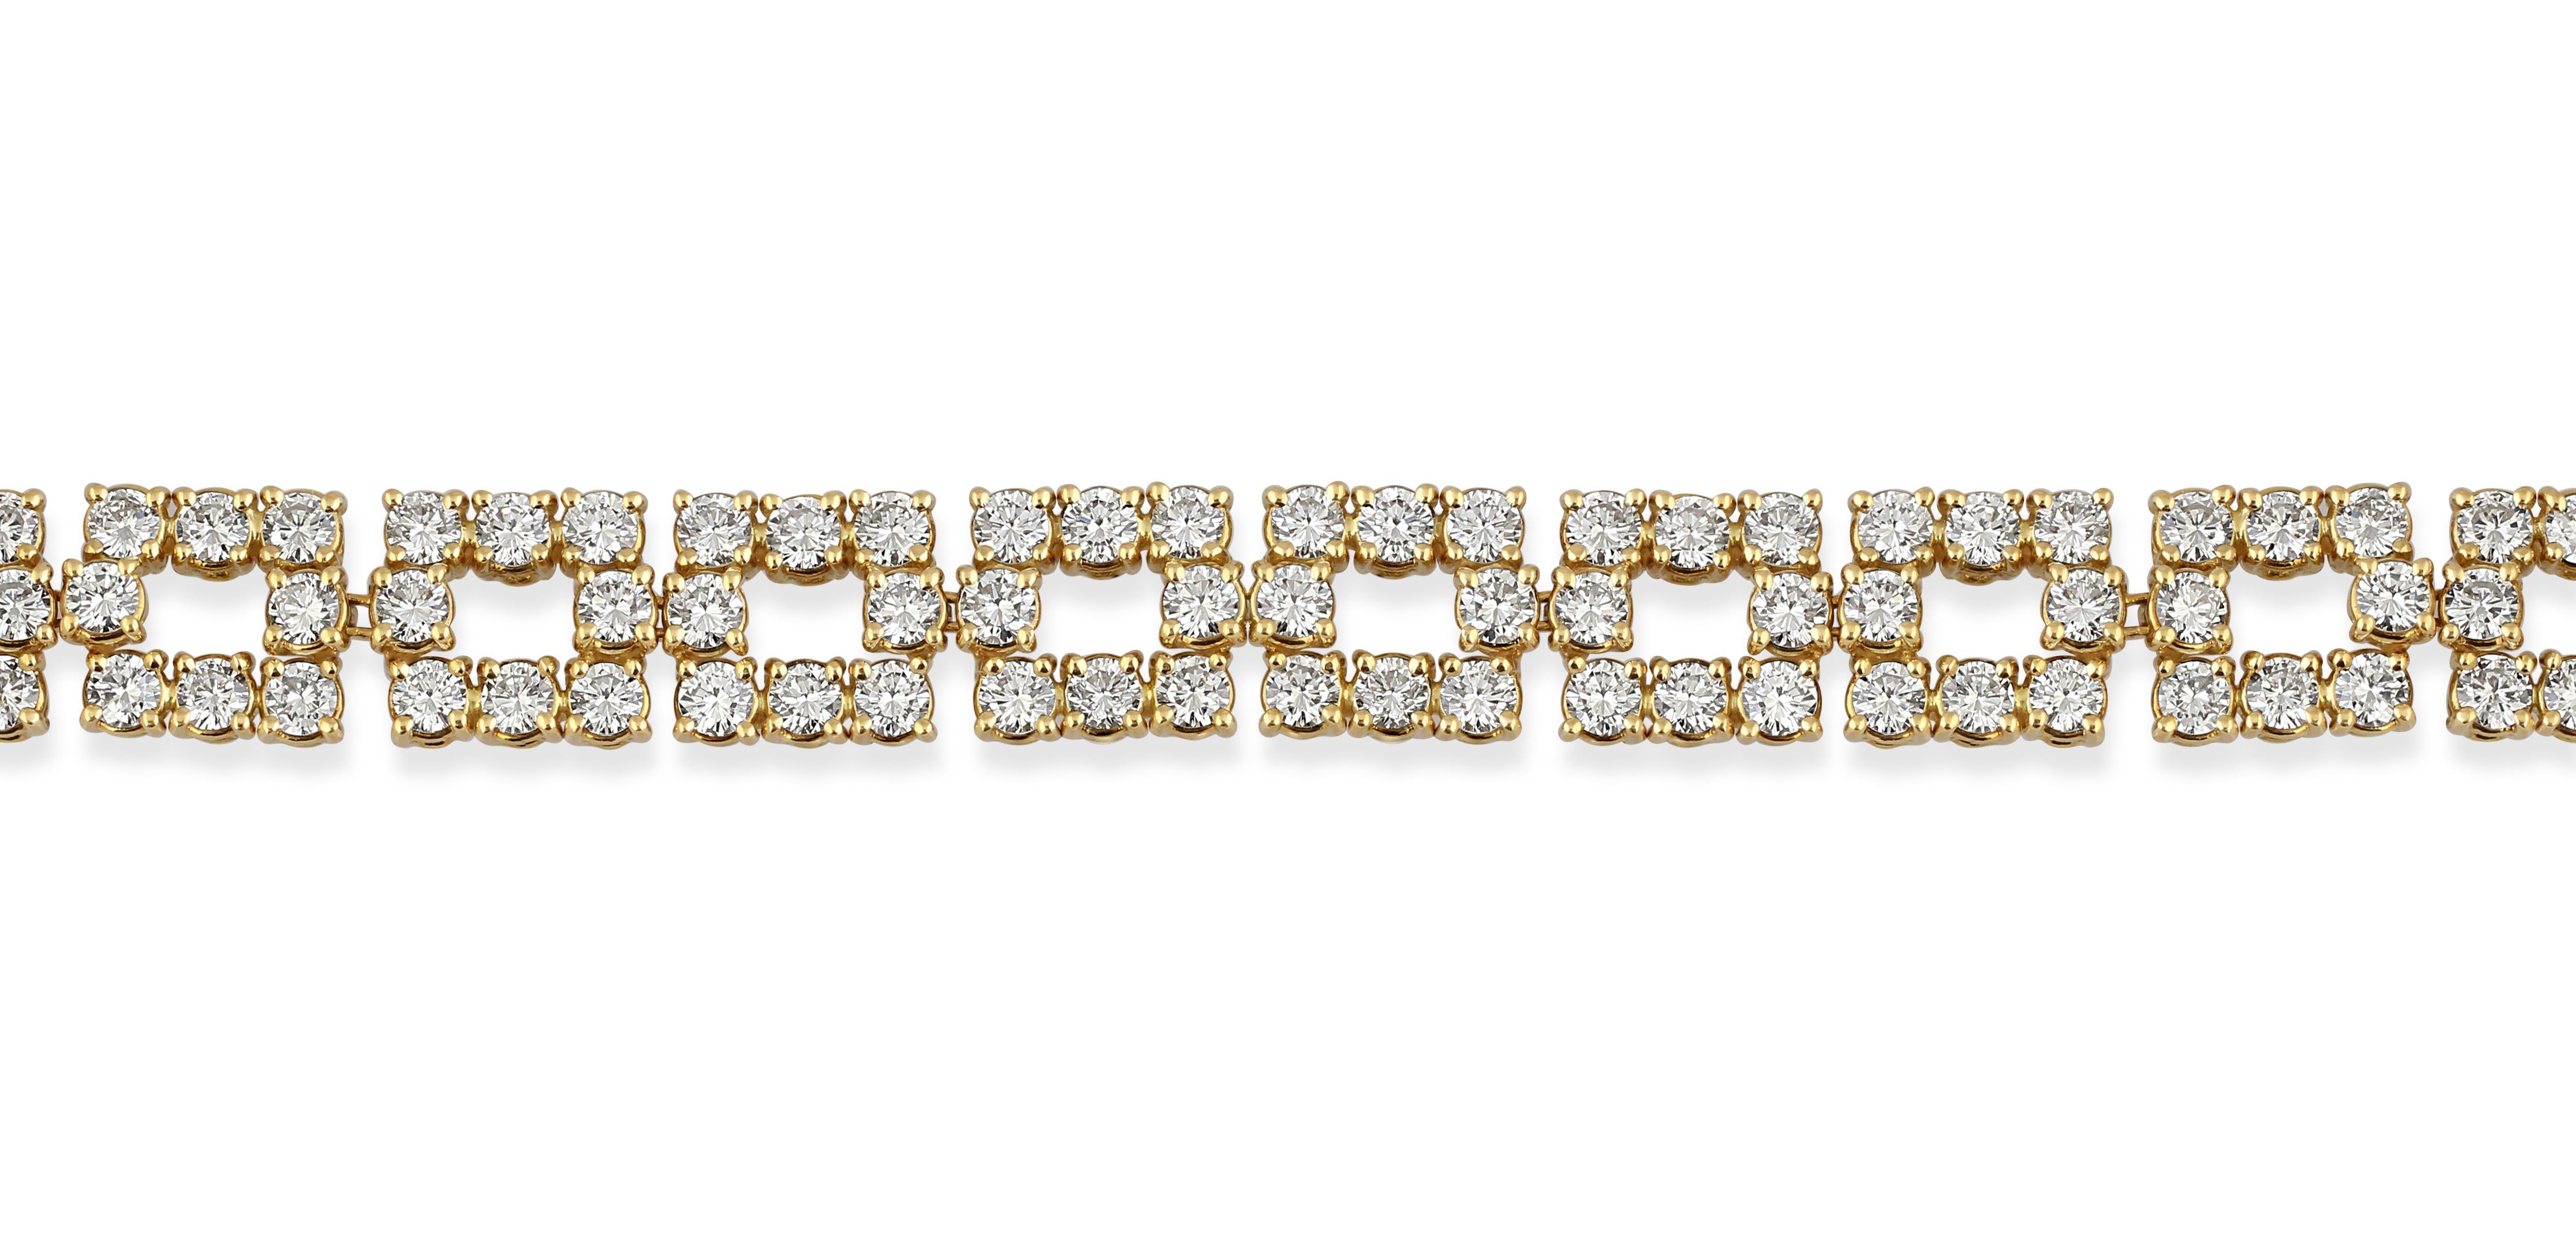 Ein Collier aus 18 Karat Gold und Diamanten, besetzt mit 20,00 Karat Diamanten im Brillantschliff.

Länge: 40,5 cm
Gewicht: 56gr
